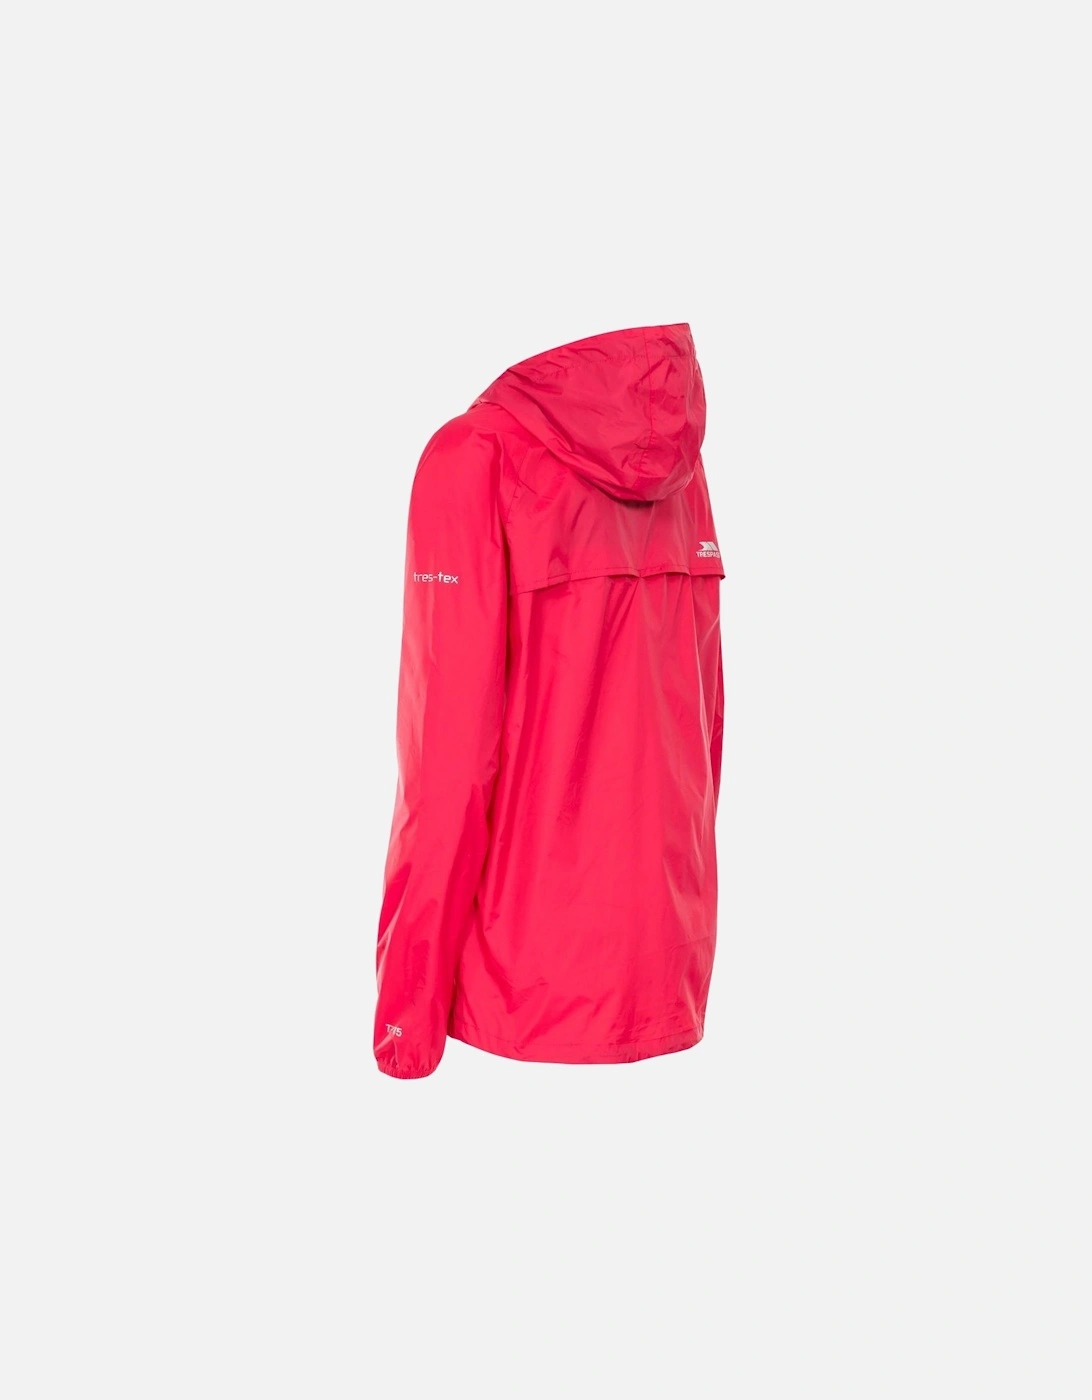 Womens/Ladies Qikpac Waterproof Packaway Shell Jacket